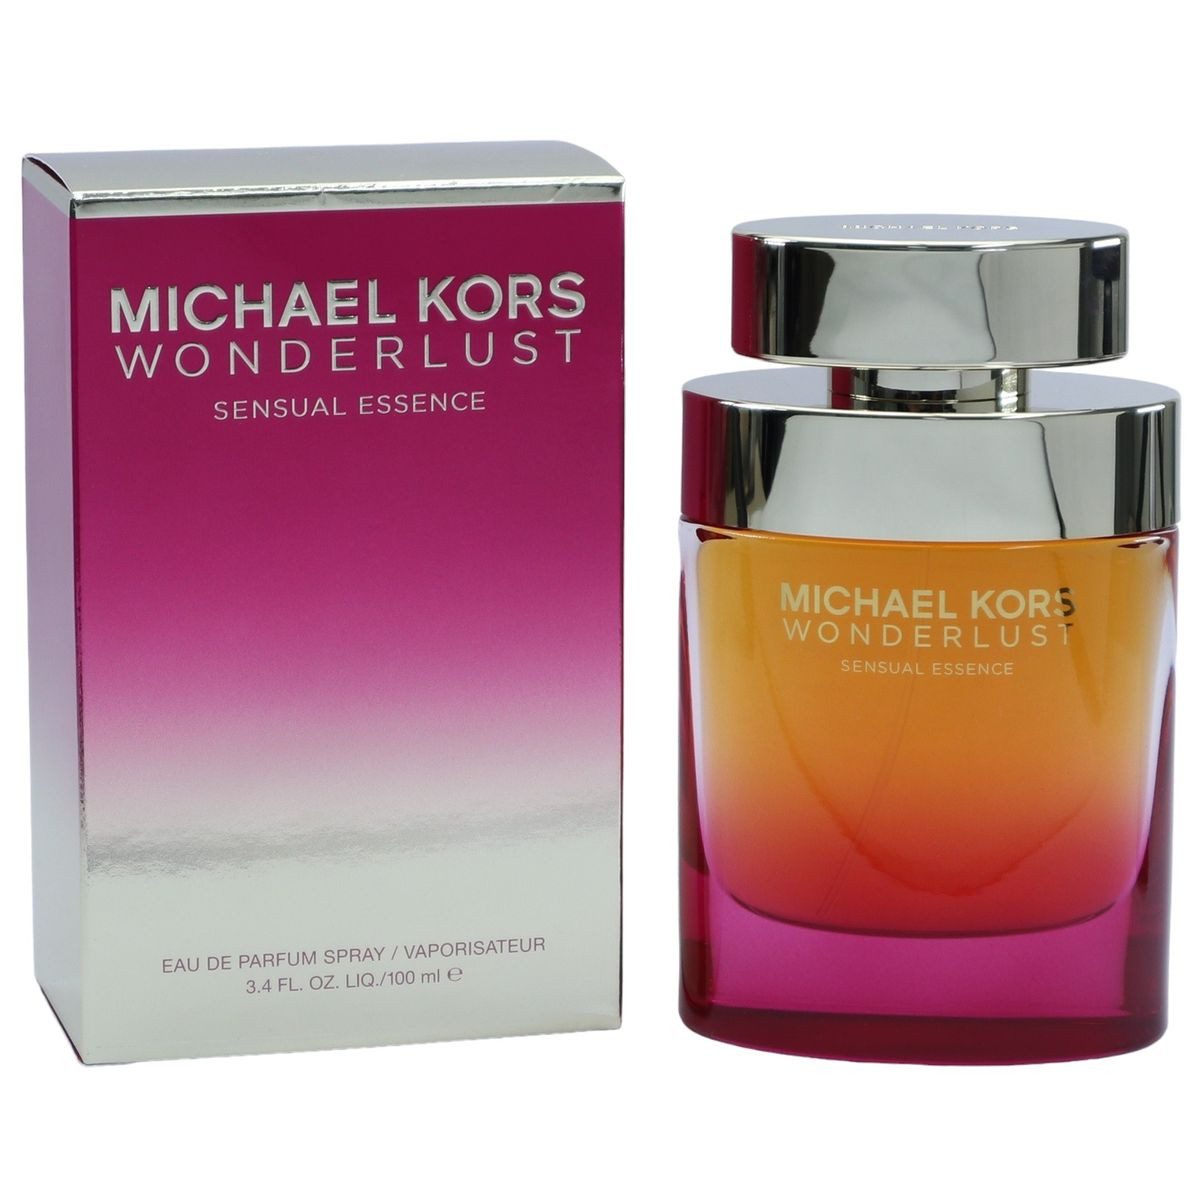 MICHAEL KORS Eau de Parfum Michael Kors Wonderlust Sensual Essence Eau de Parfum Spray 100 ml